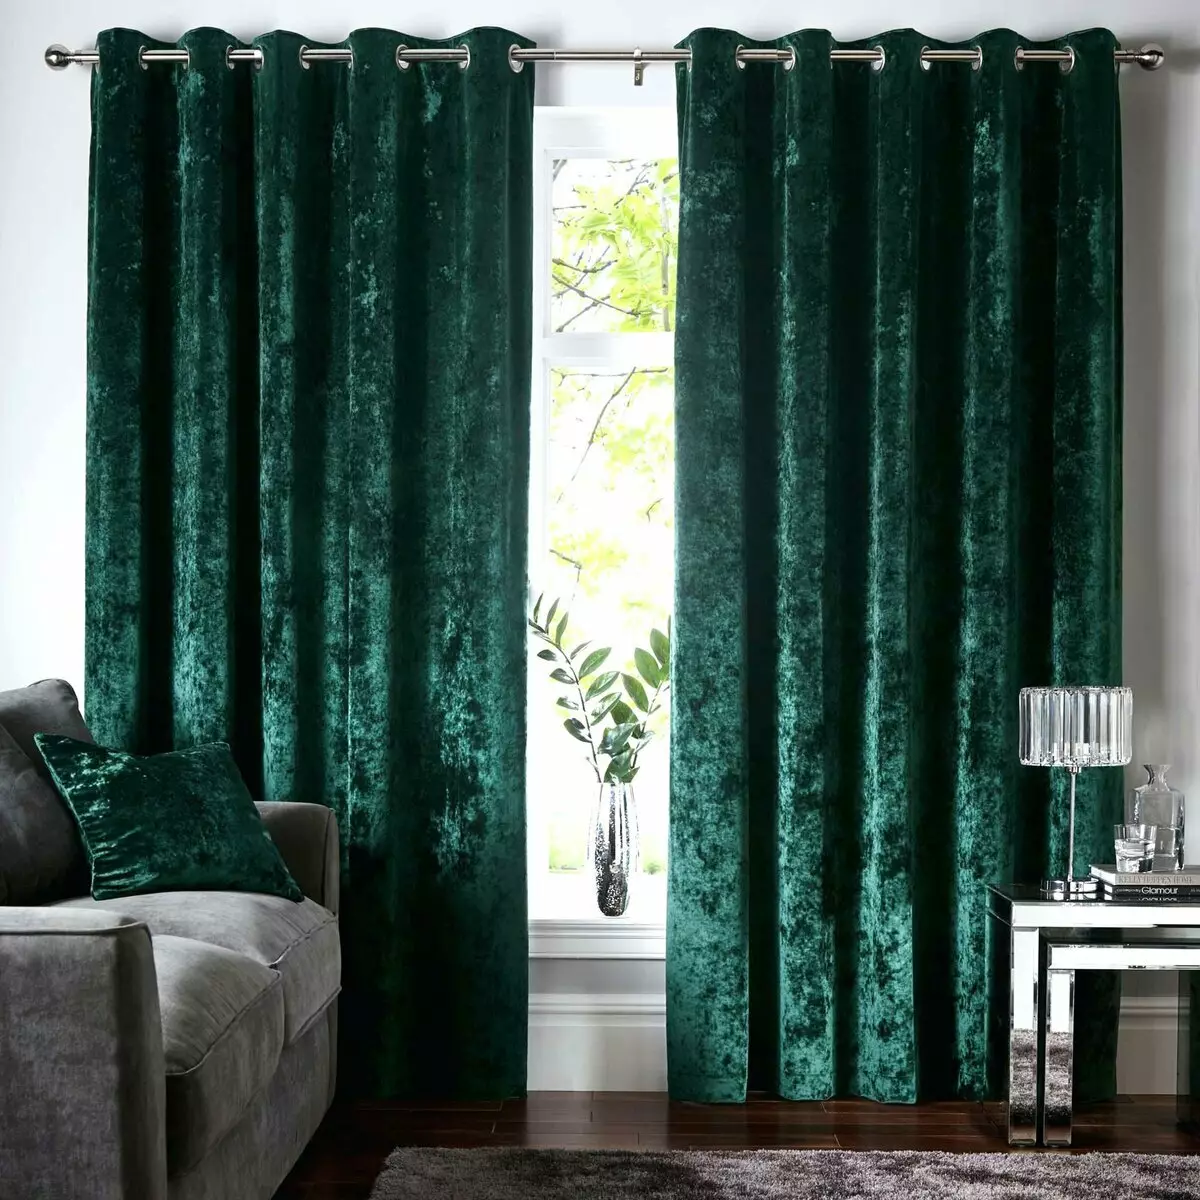 绿色窗帘在客厅内部（51张照片）：绿色窗帘设计在大厅里。内部深绿色和其他色调的窗帘 9790_45